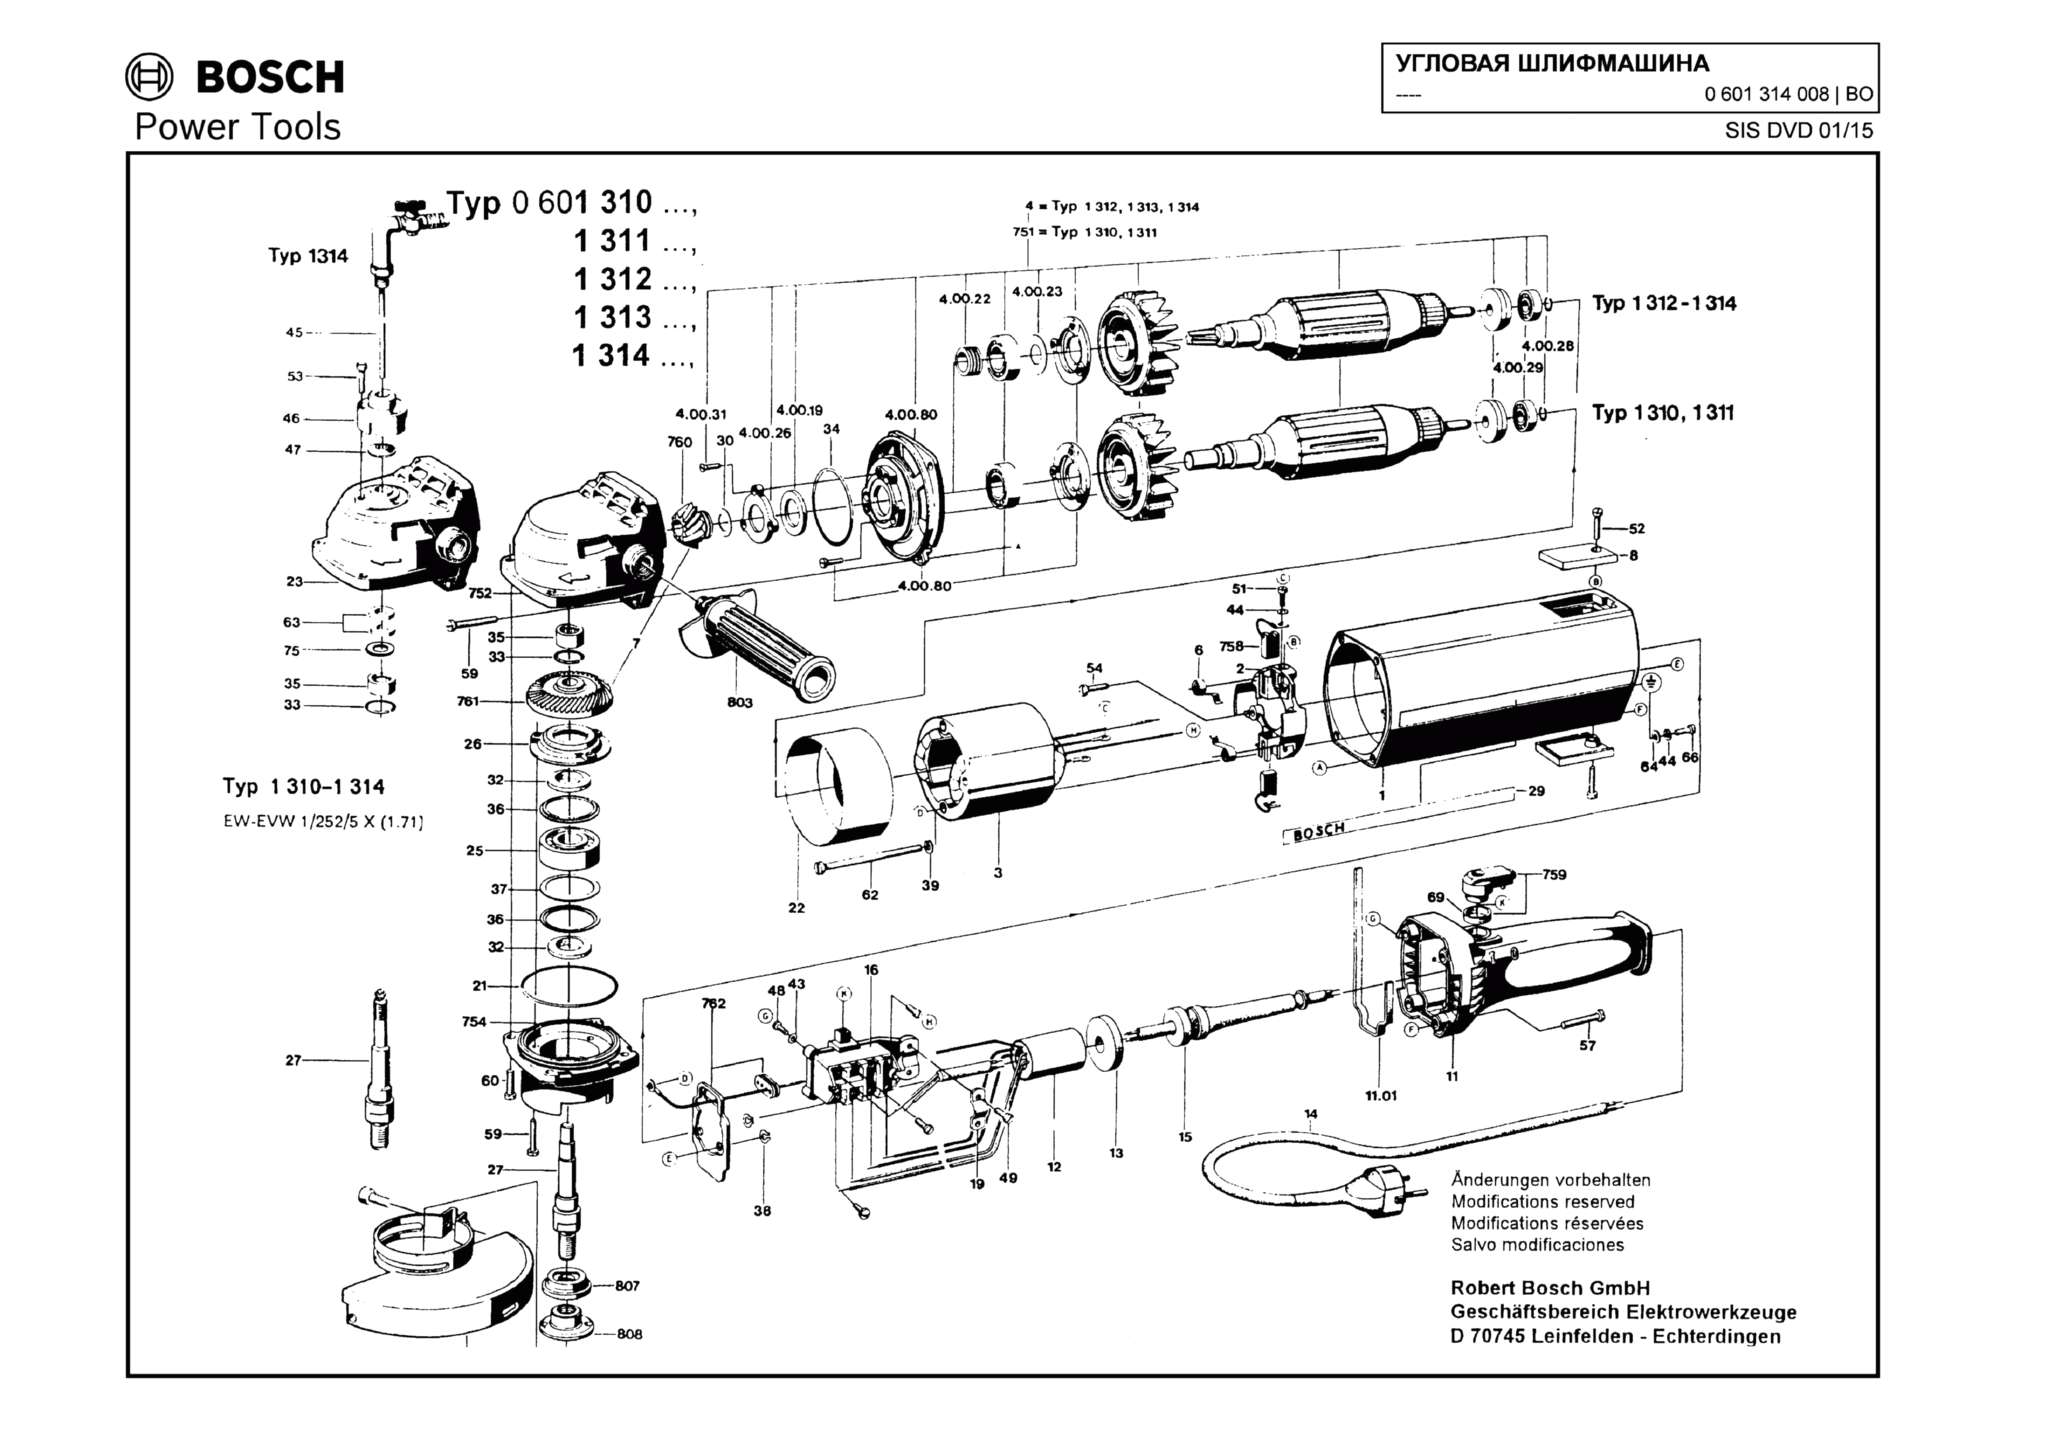 Запчасти, схема и деталировка Bosch (ТИП 0601314008)